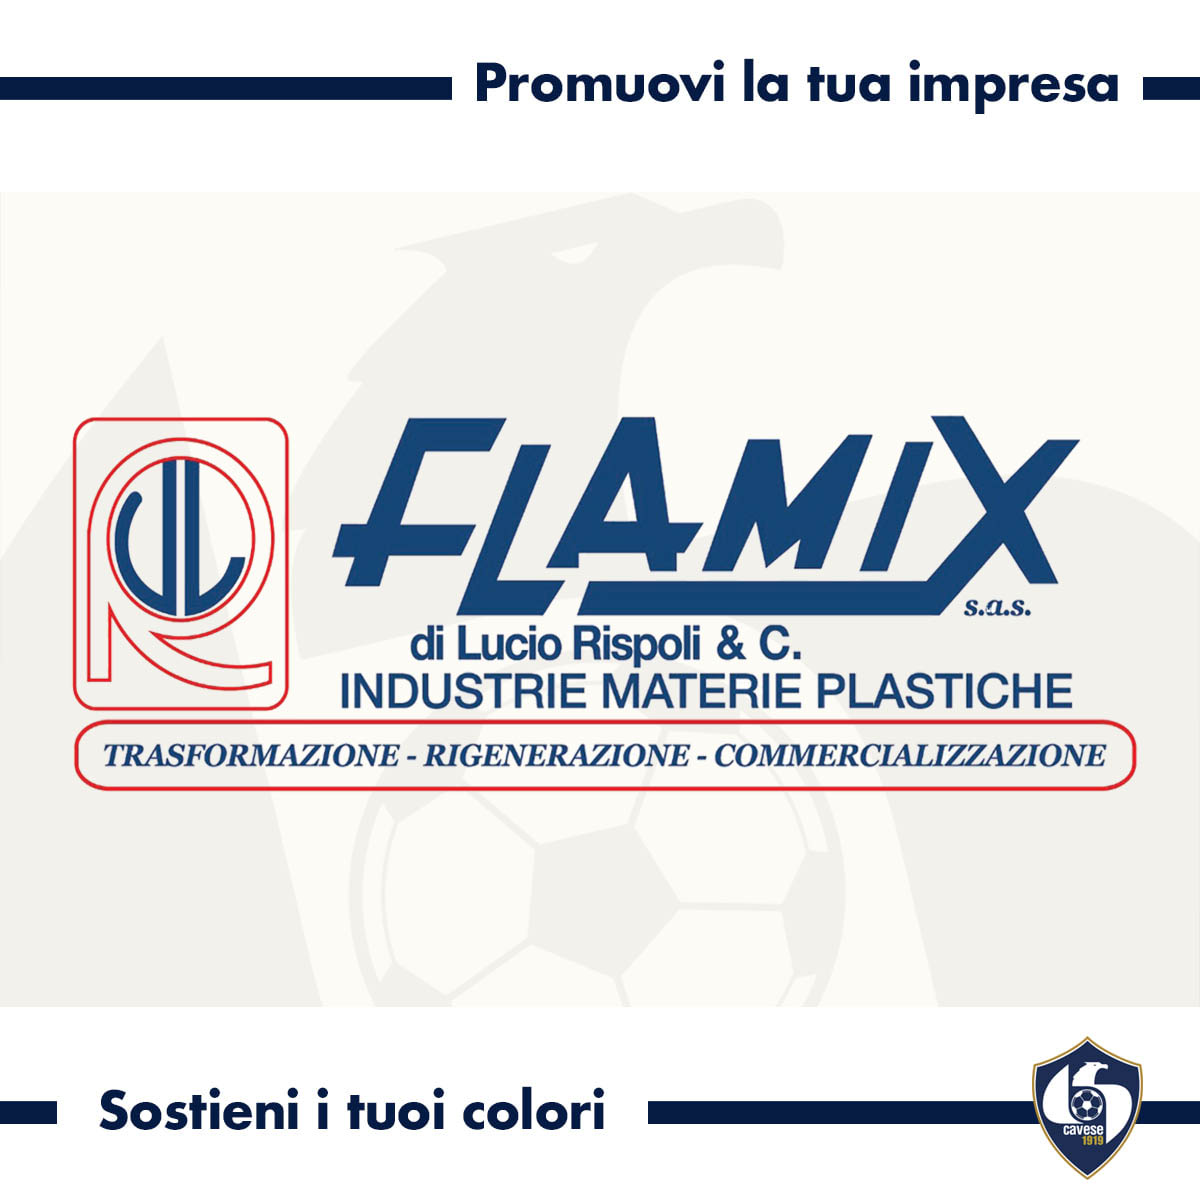 Flamix, Industrie Materie Plastiche